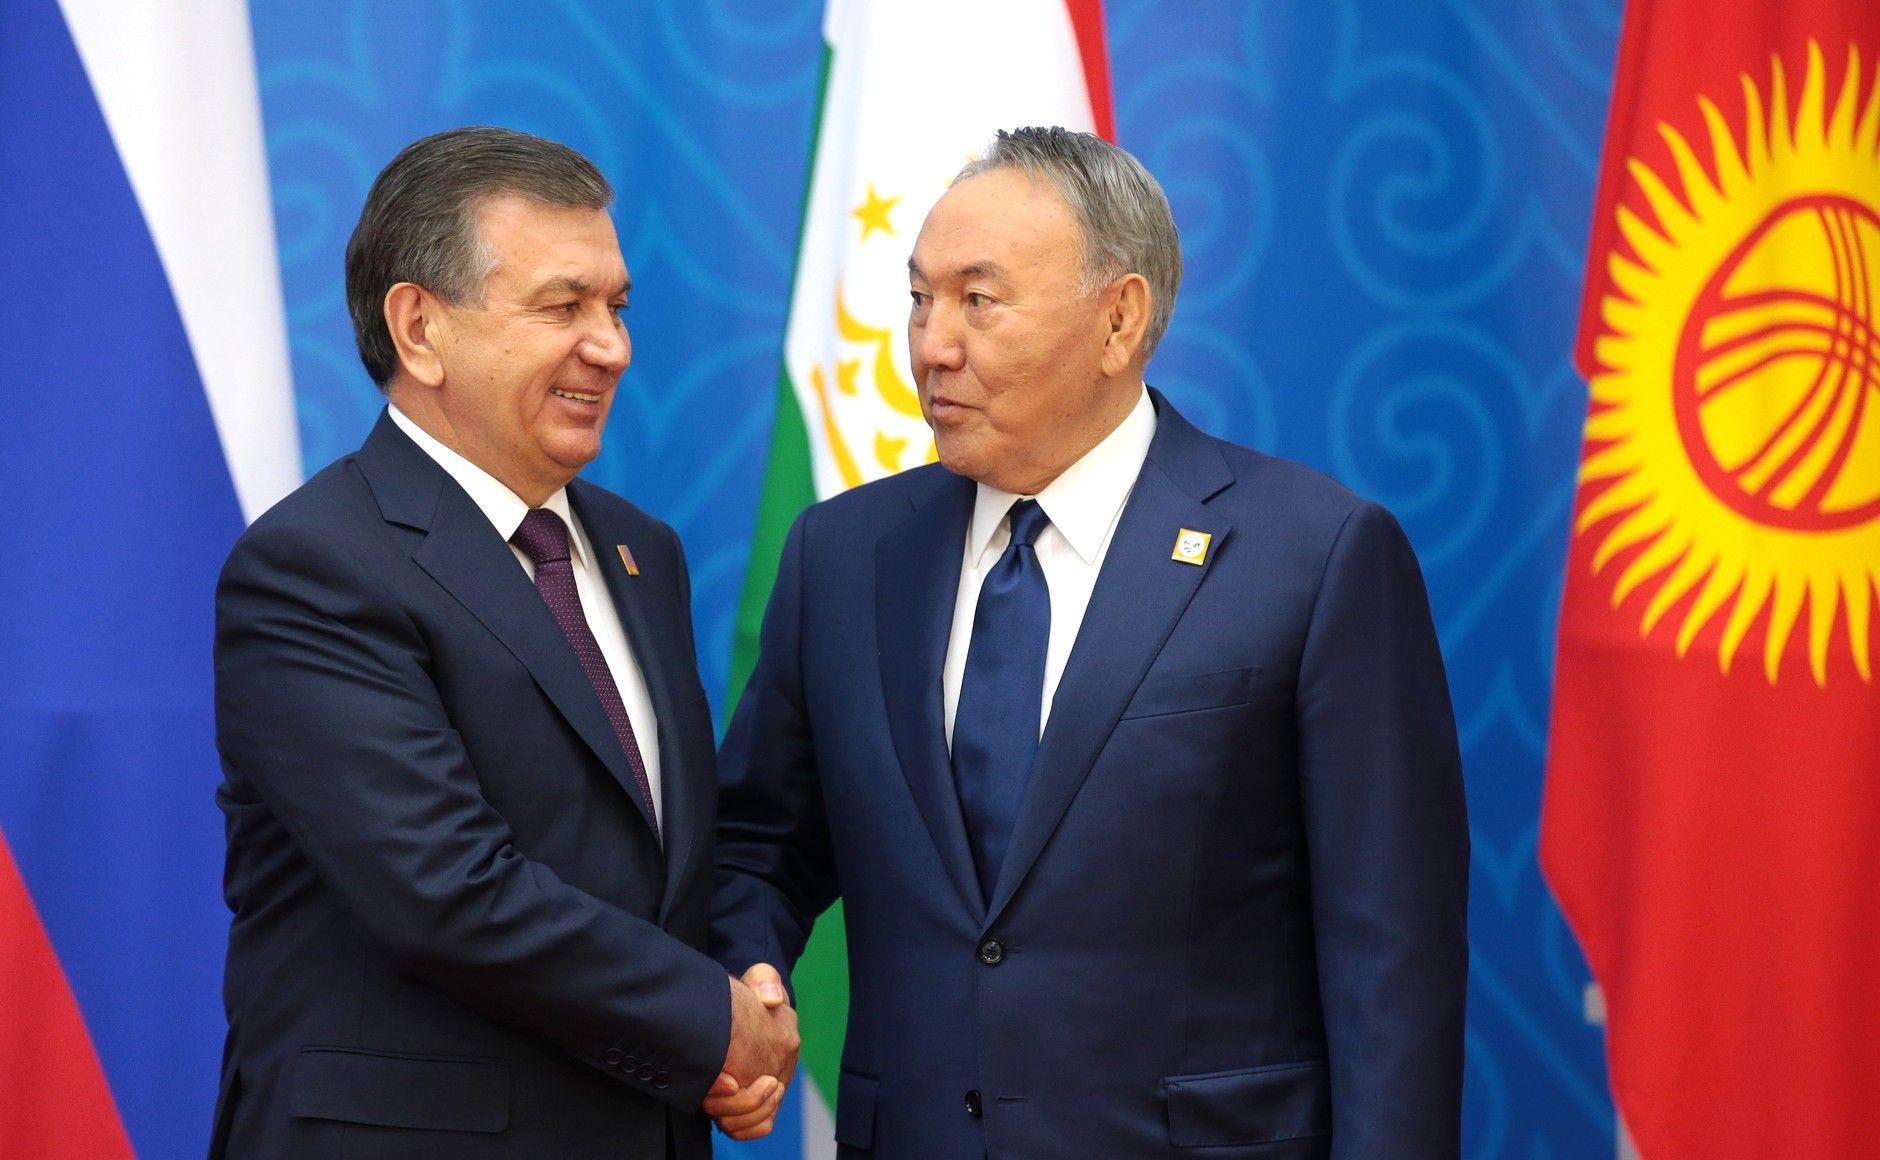 Узбекистан не вступит в ЕАЭС, но может рассмотреть зону свободной торговли – эксперт